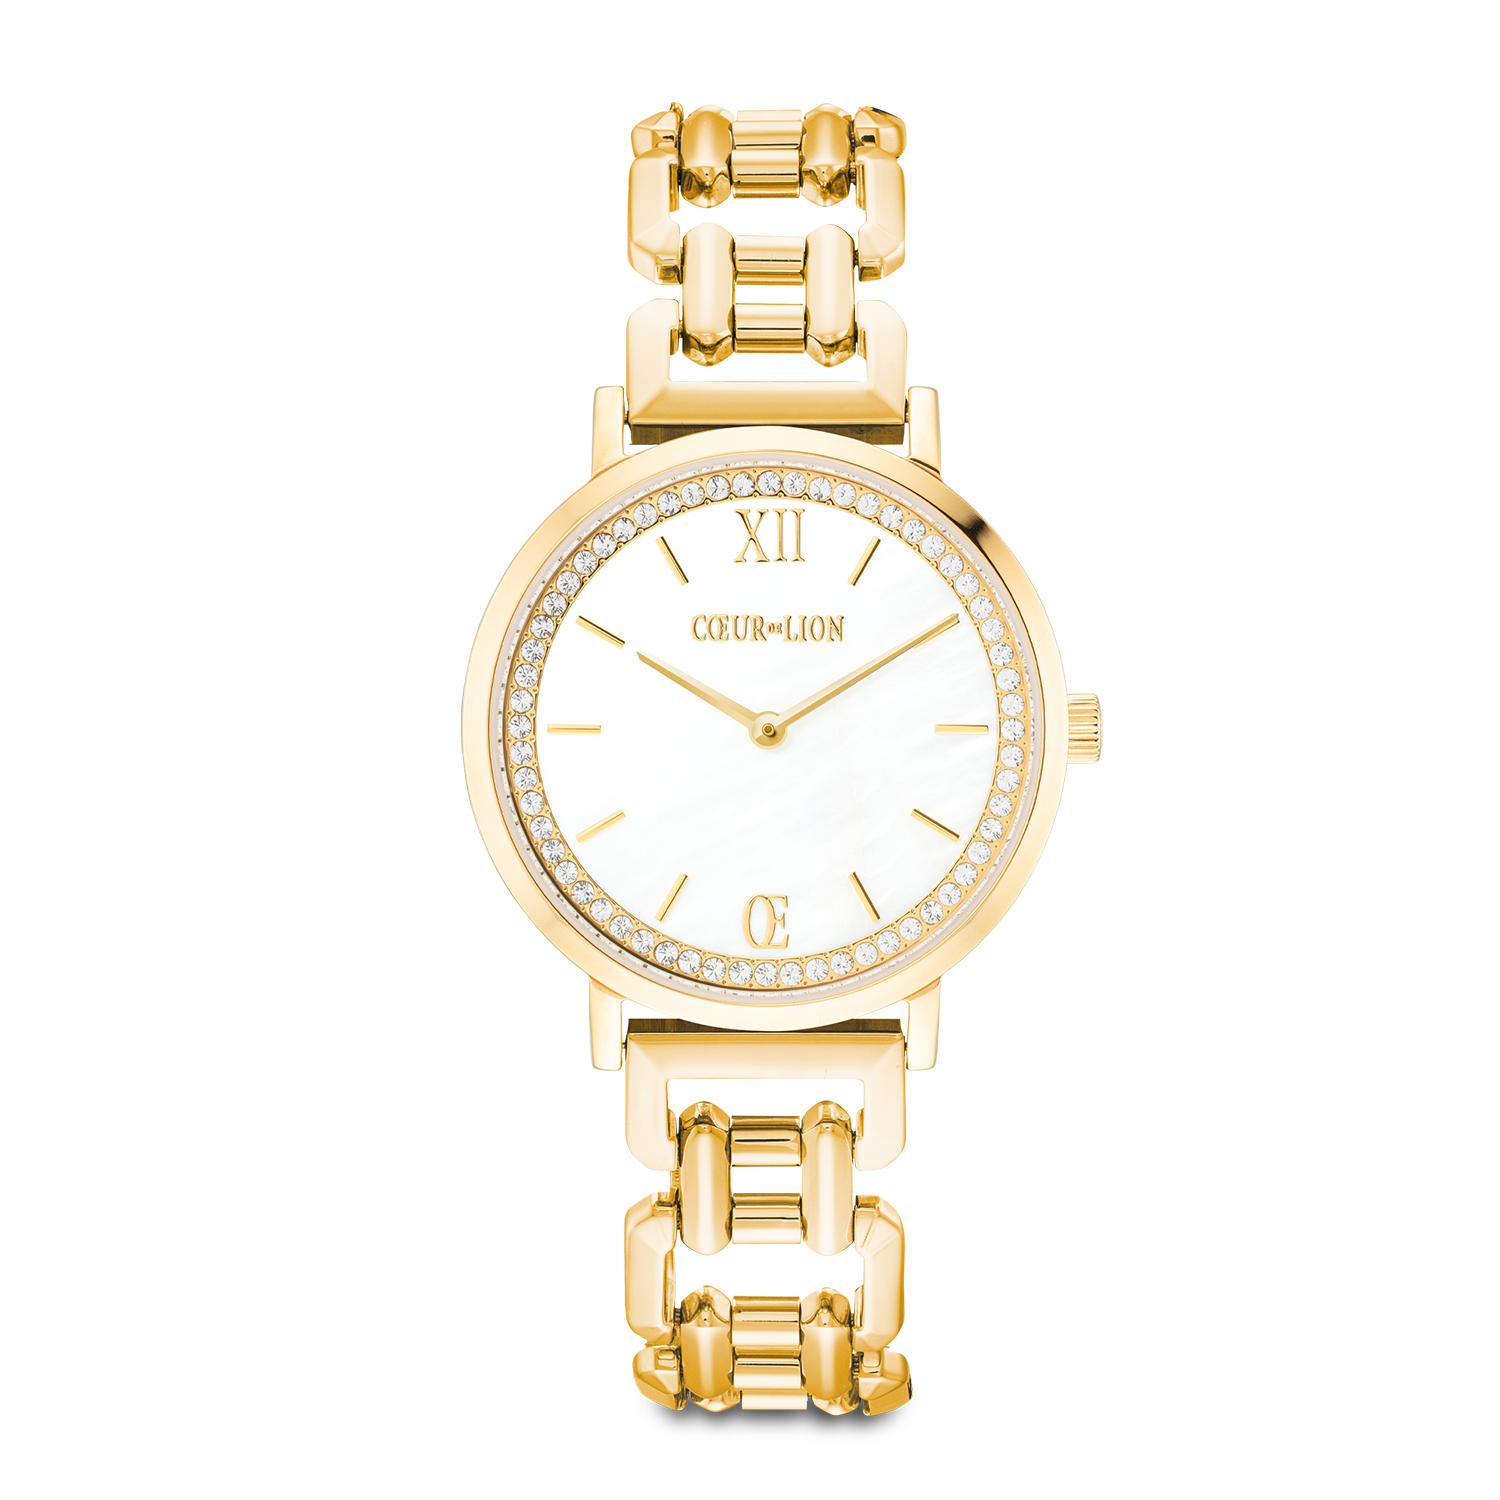 Geschenkset Uhr Rund Sparkling Perlmutt & Armband Drops Gold